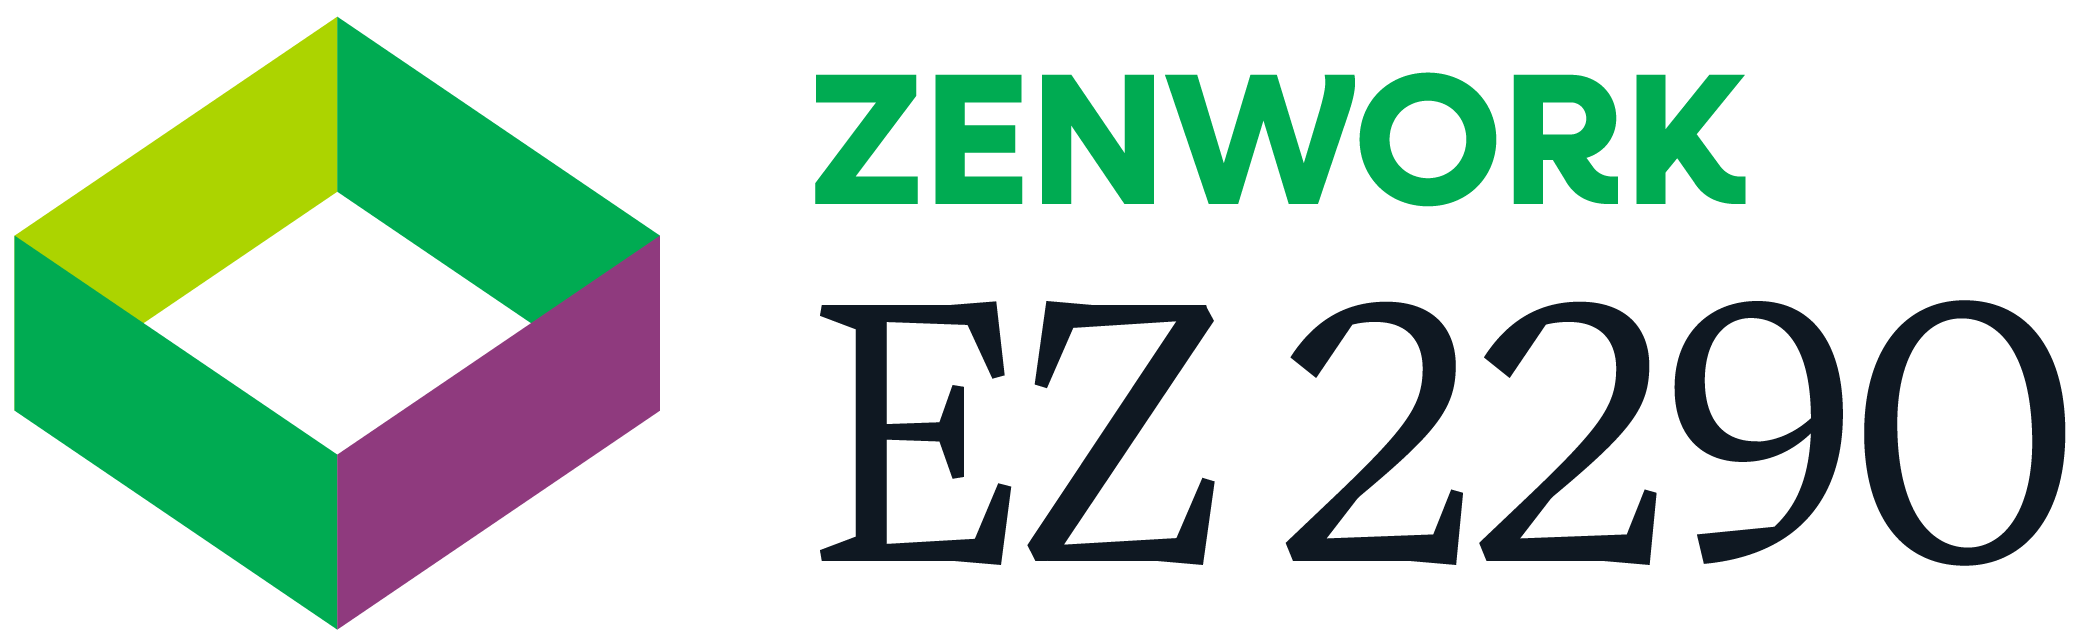 ez2290_logo